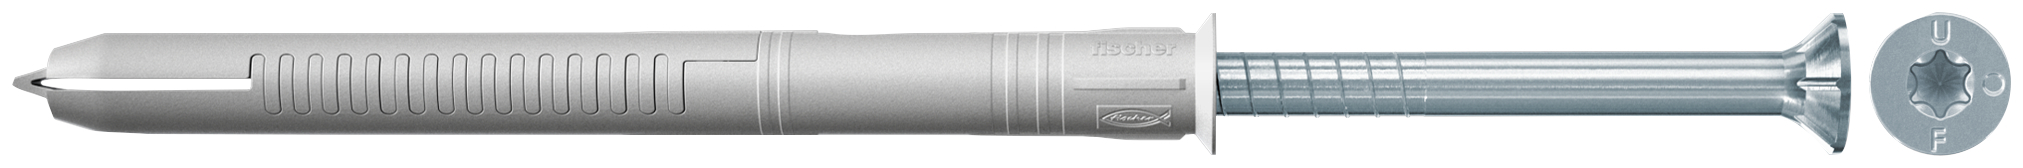 fischer Tassello prolungato FUR 10X80 T con vite torx (50 Pz.) Tassello prolungato in nylon per serramenti con vite premontata T.S.P. con impronta Torx.